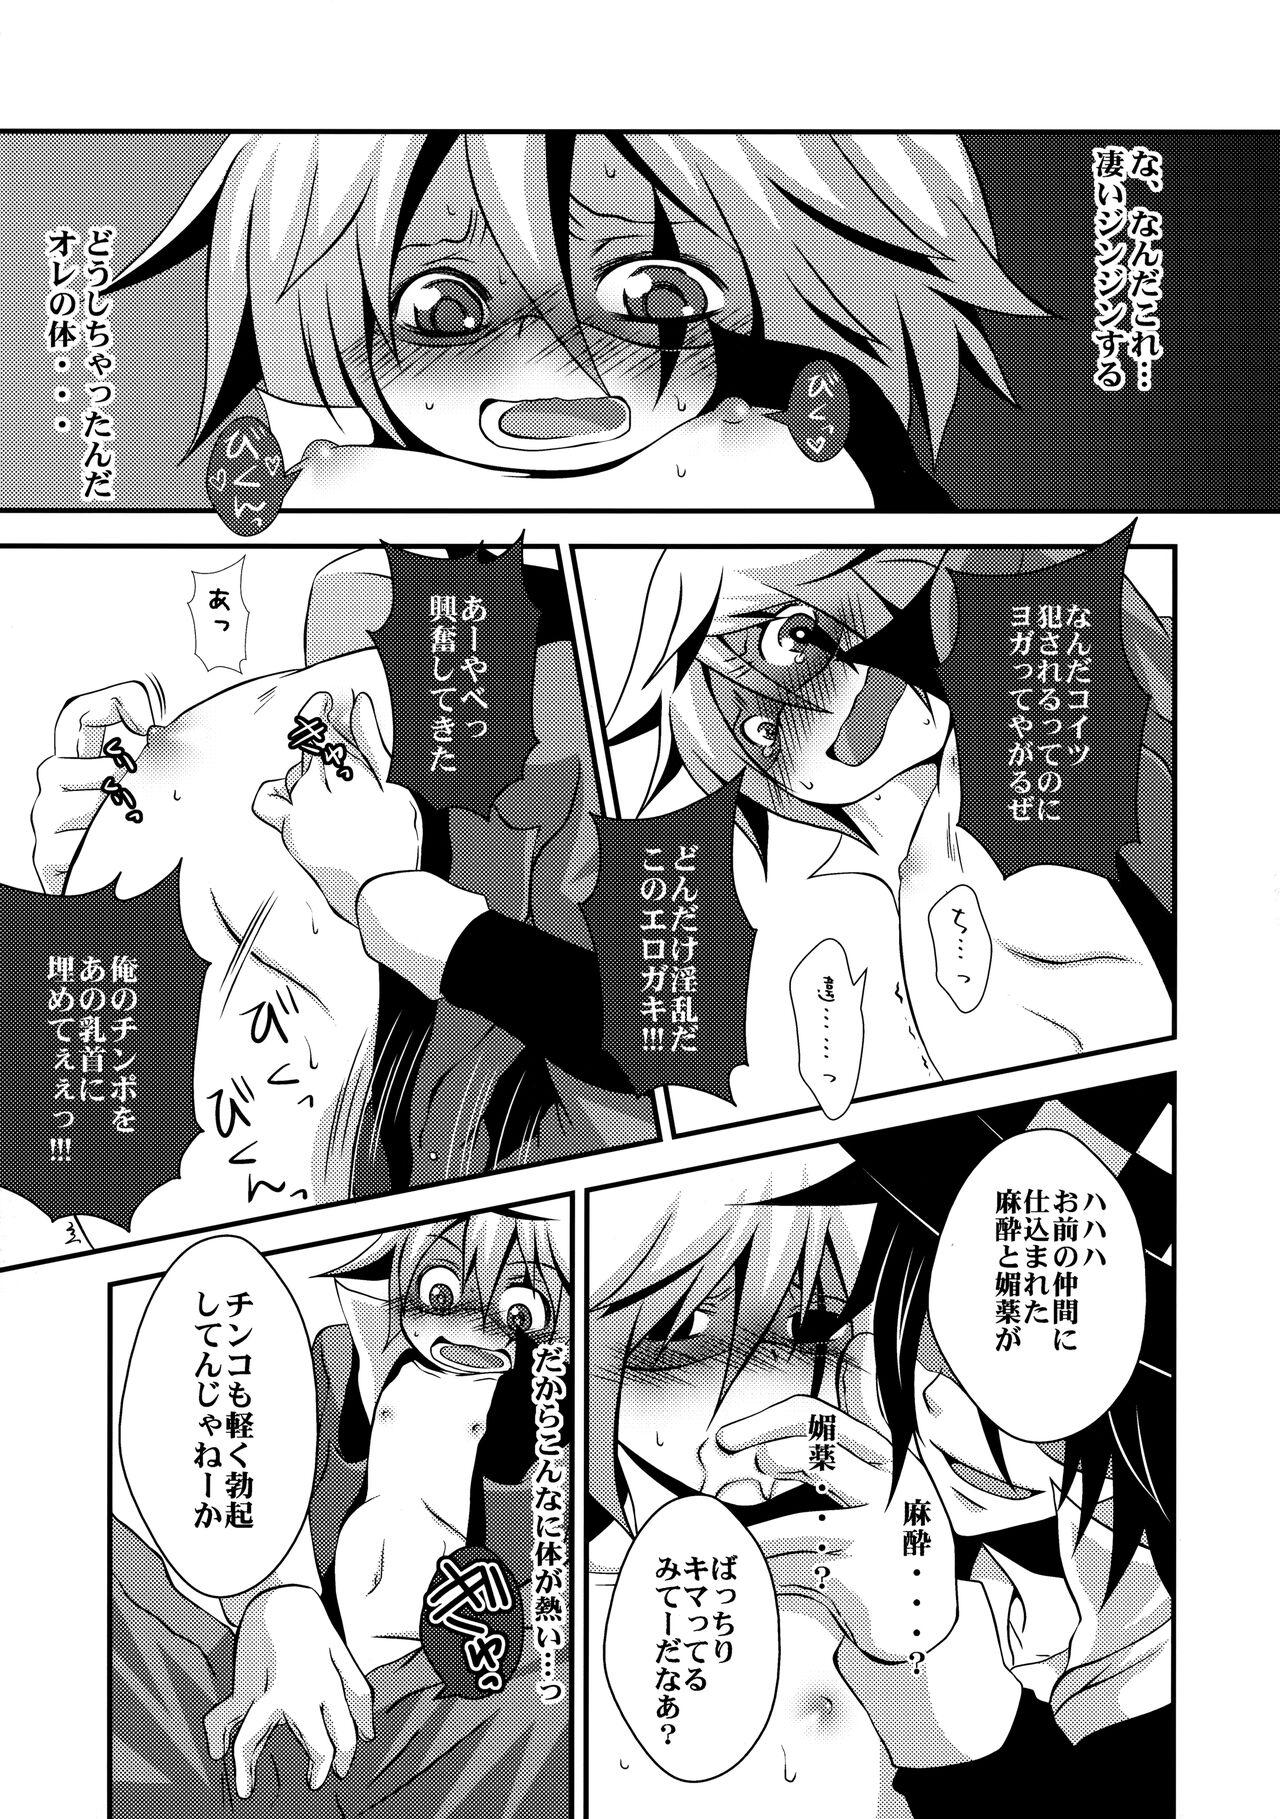 Licking Kaitou Namaiki ☆ Ecstasy - Kaitou joker Spanish - Page 8